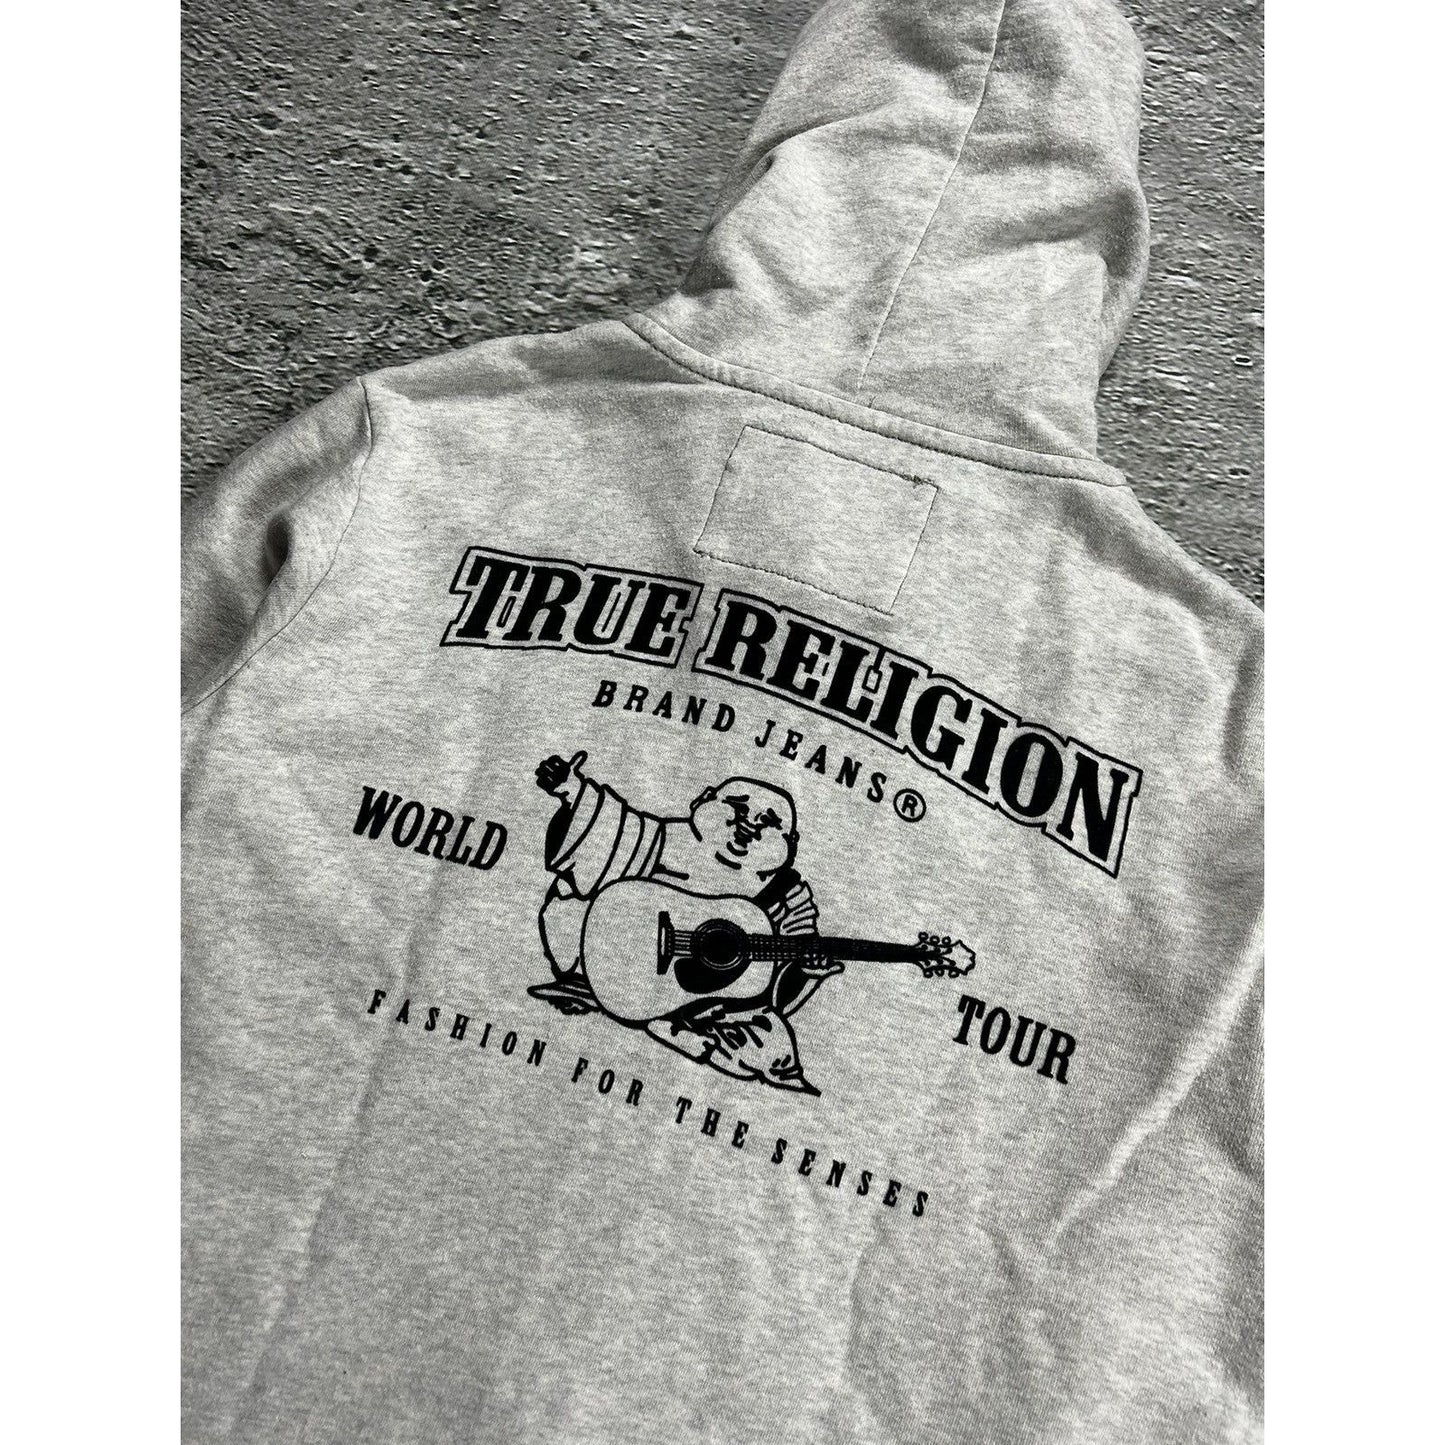 True Religion zip hoodie big logo vintage big logo Y2K